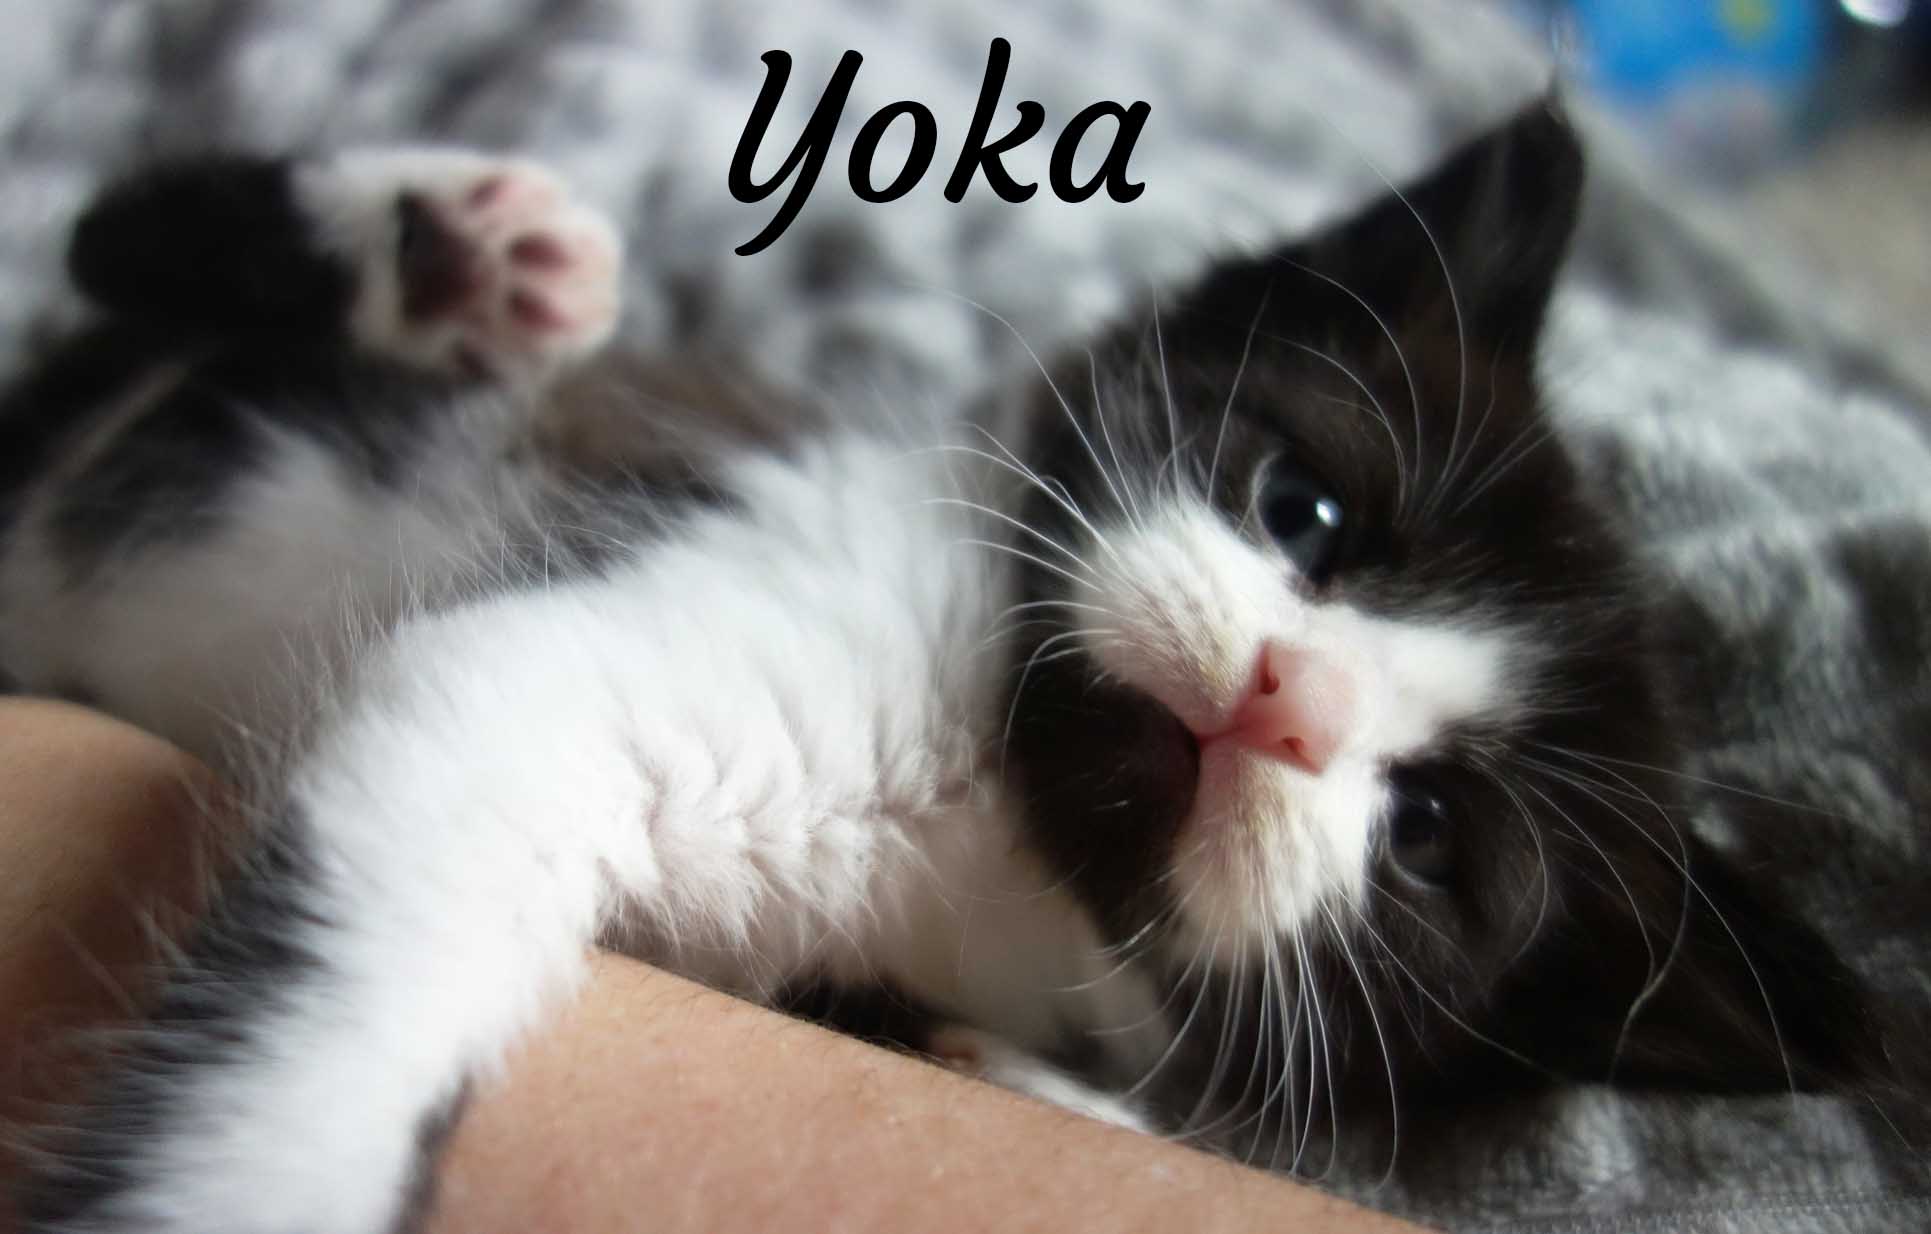 YOKA